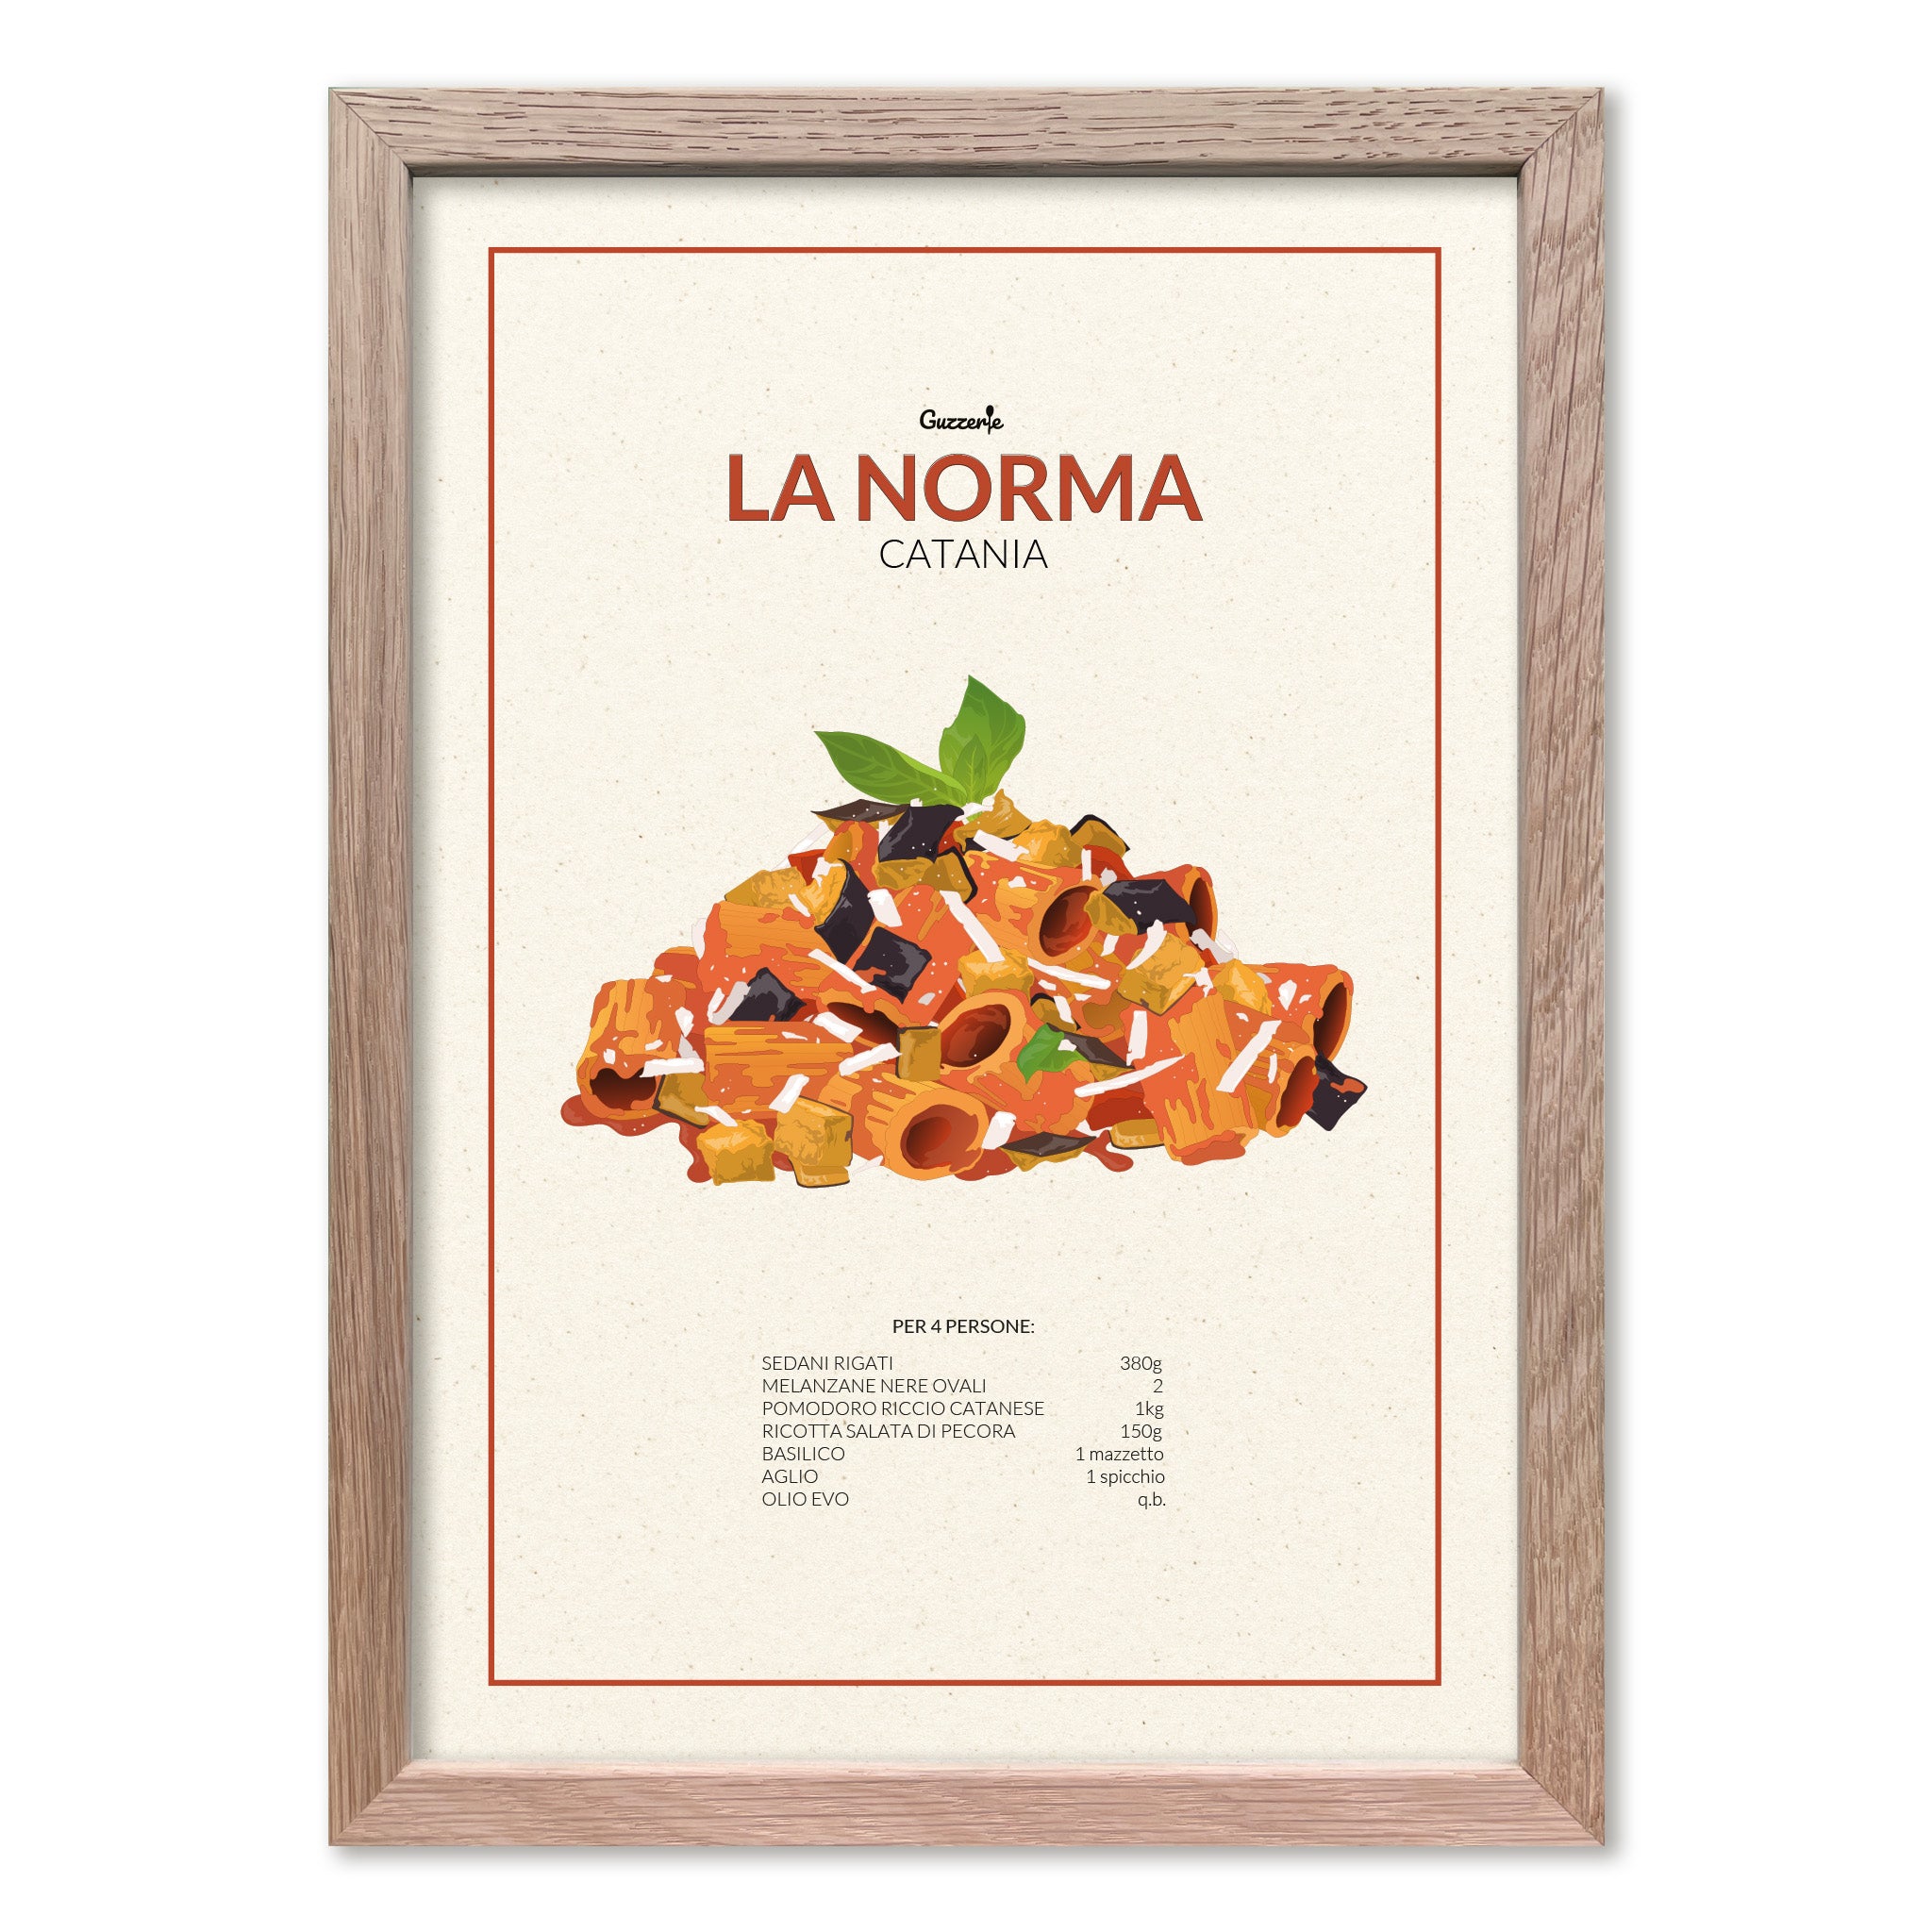 Iconic Poster of Pasta alla Norma | Guzzerie